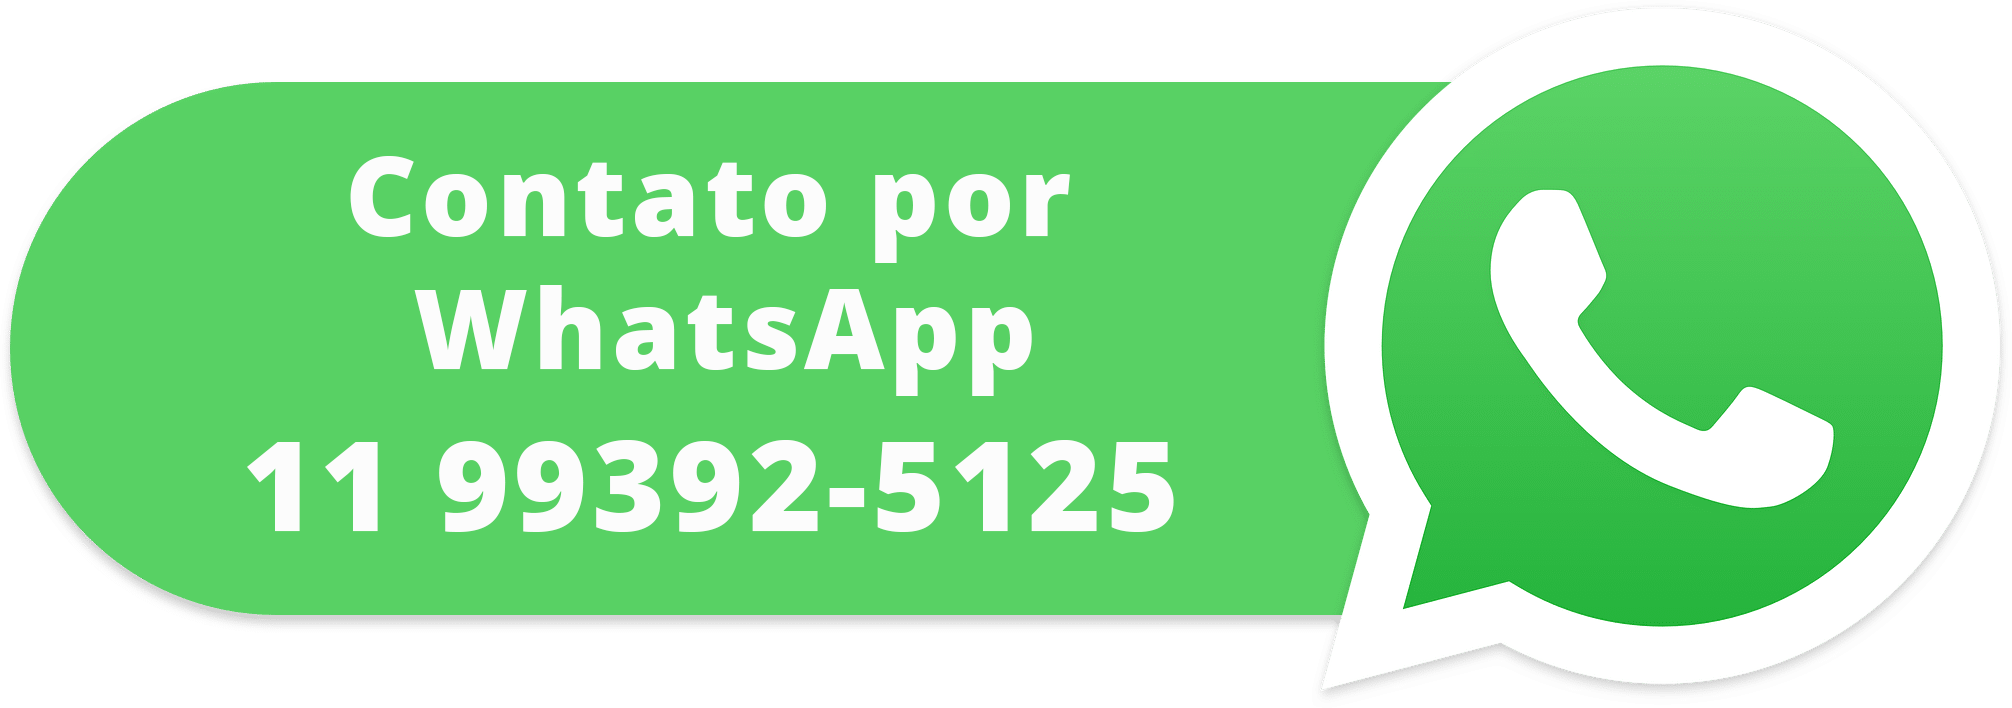 WhatsApp! 11 99392-5125